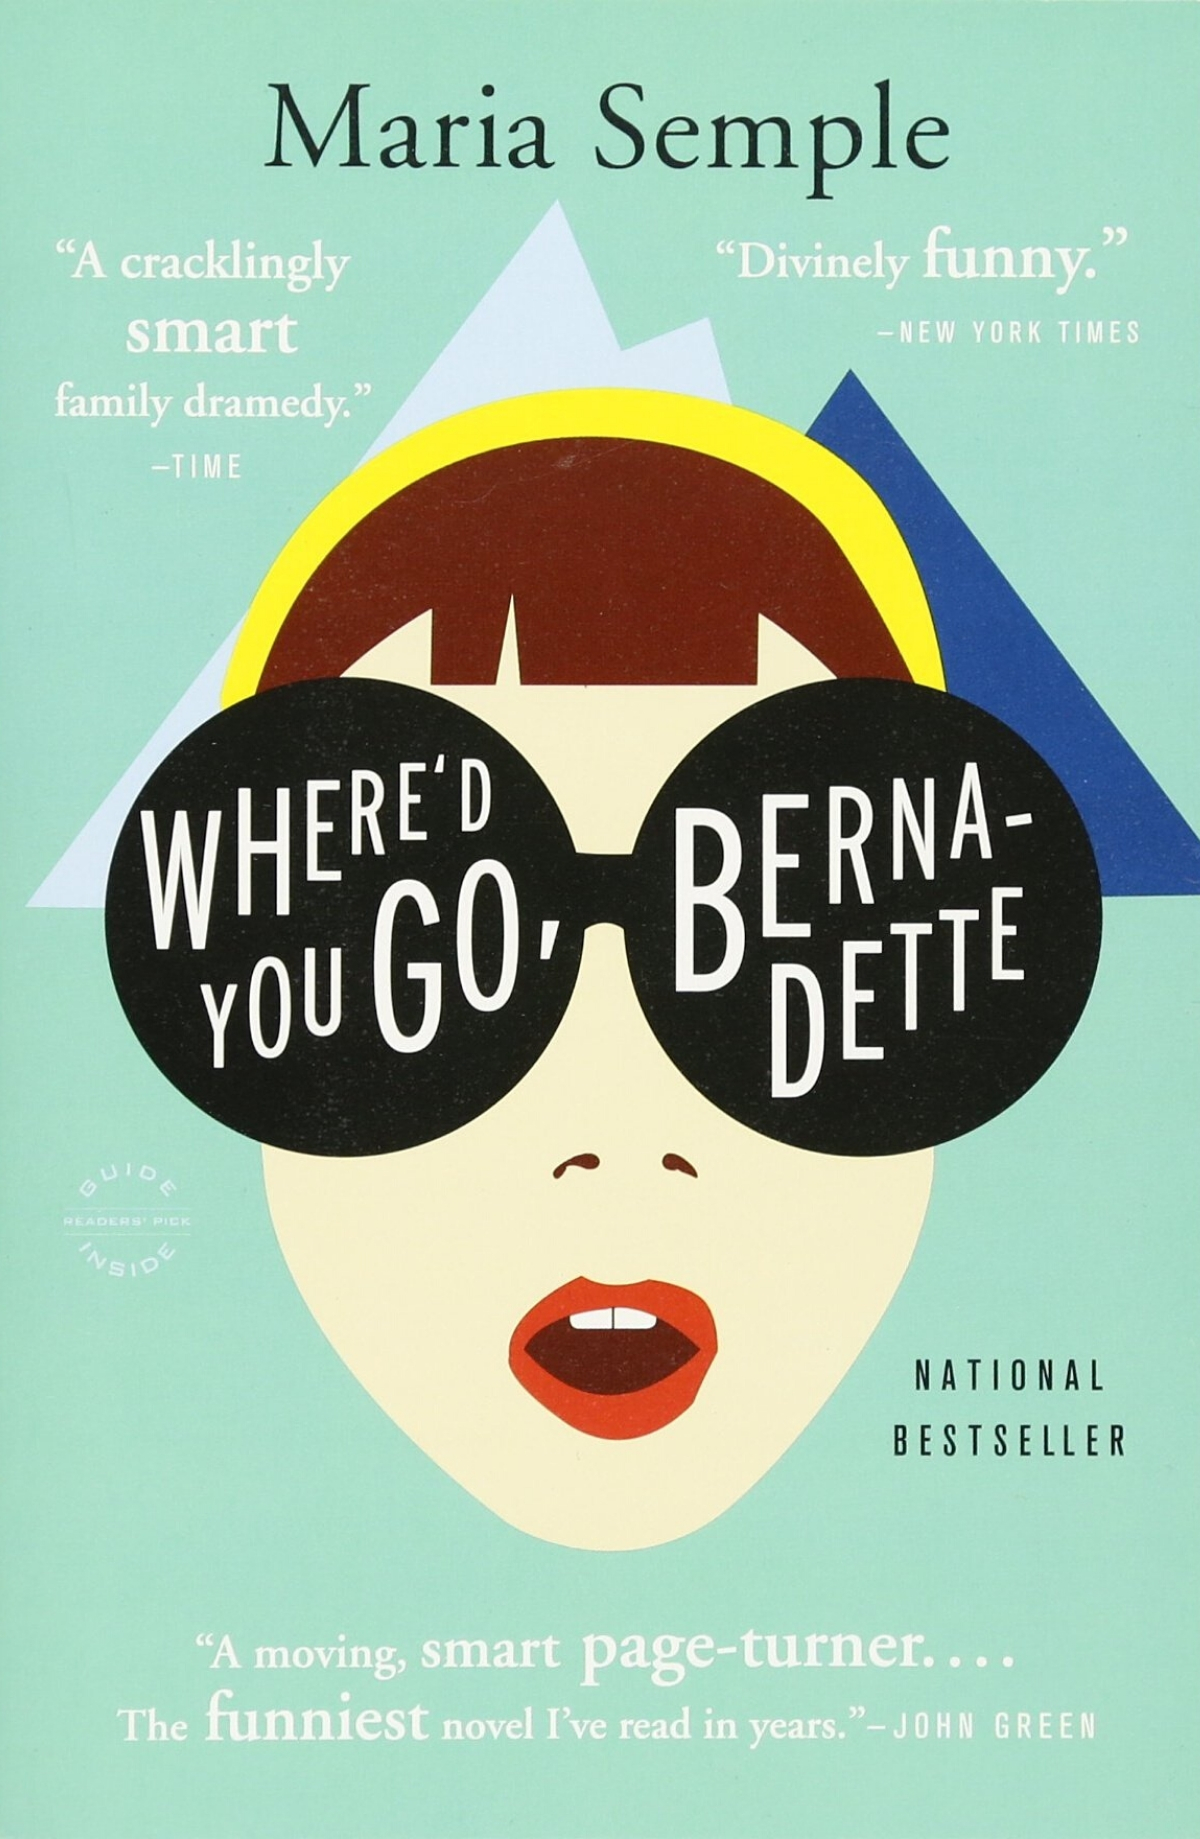 Book Review: Where'd You Go Bernadette?